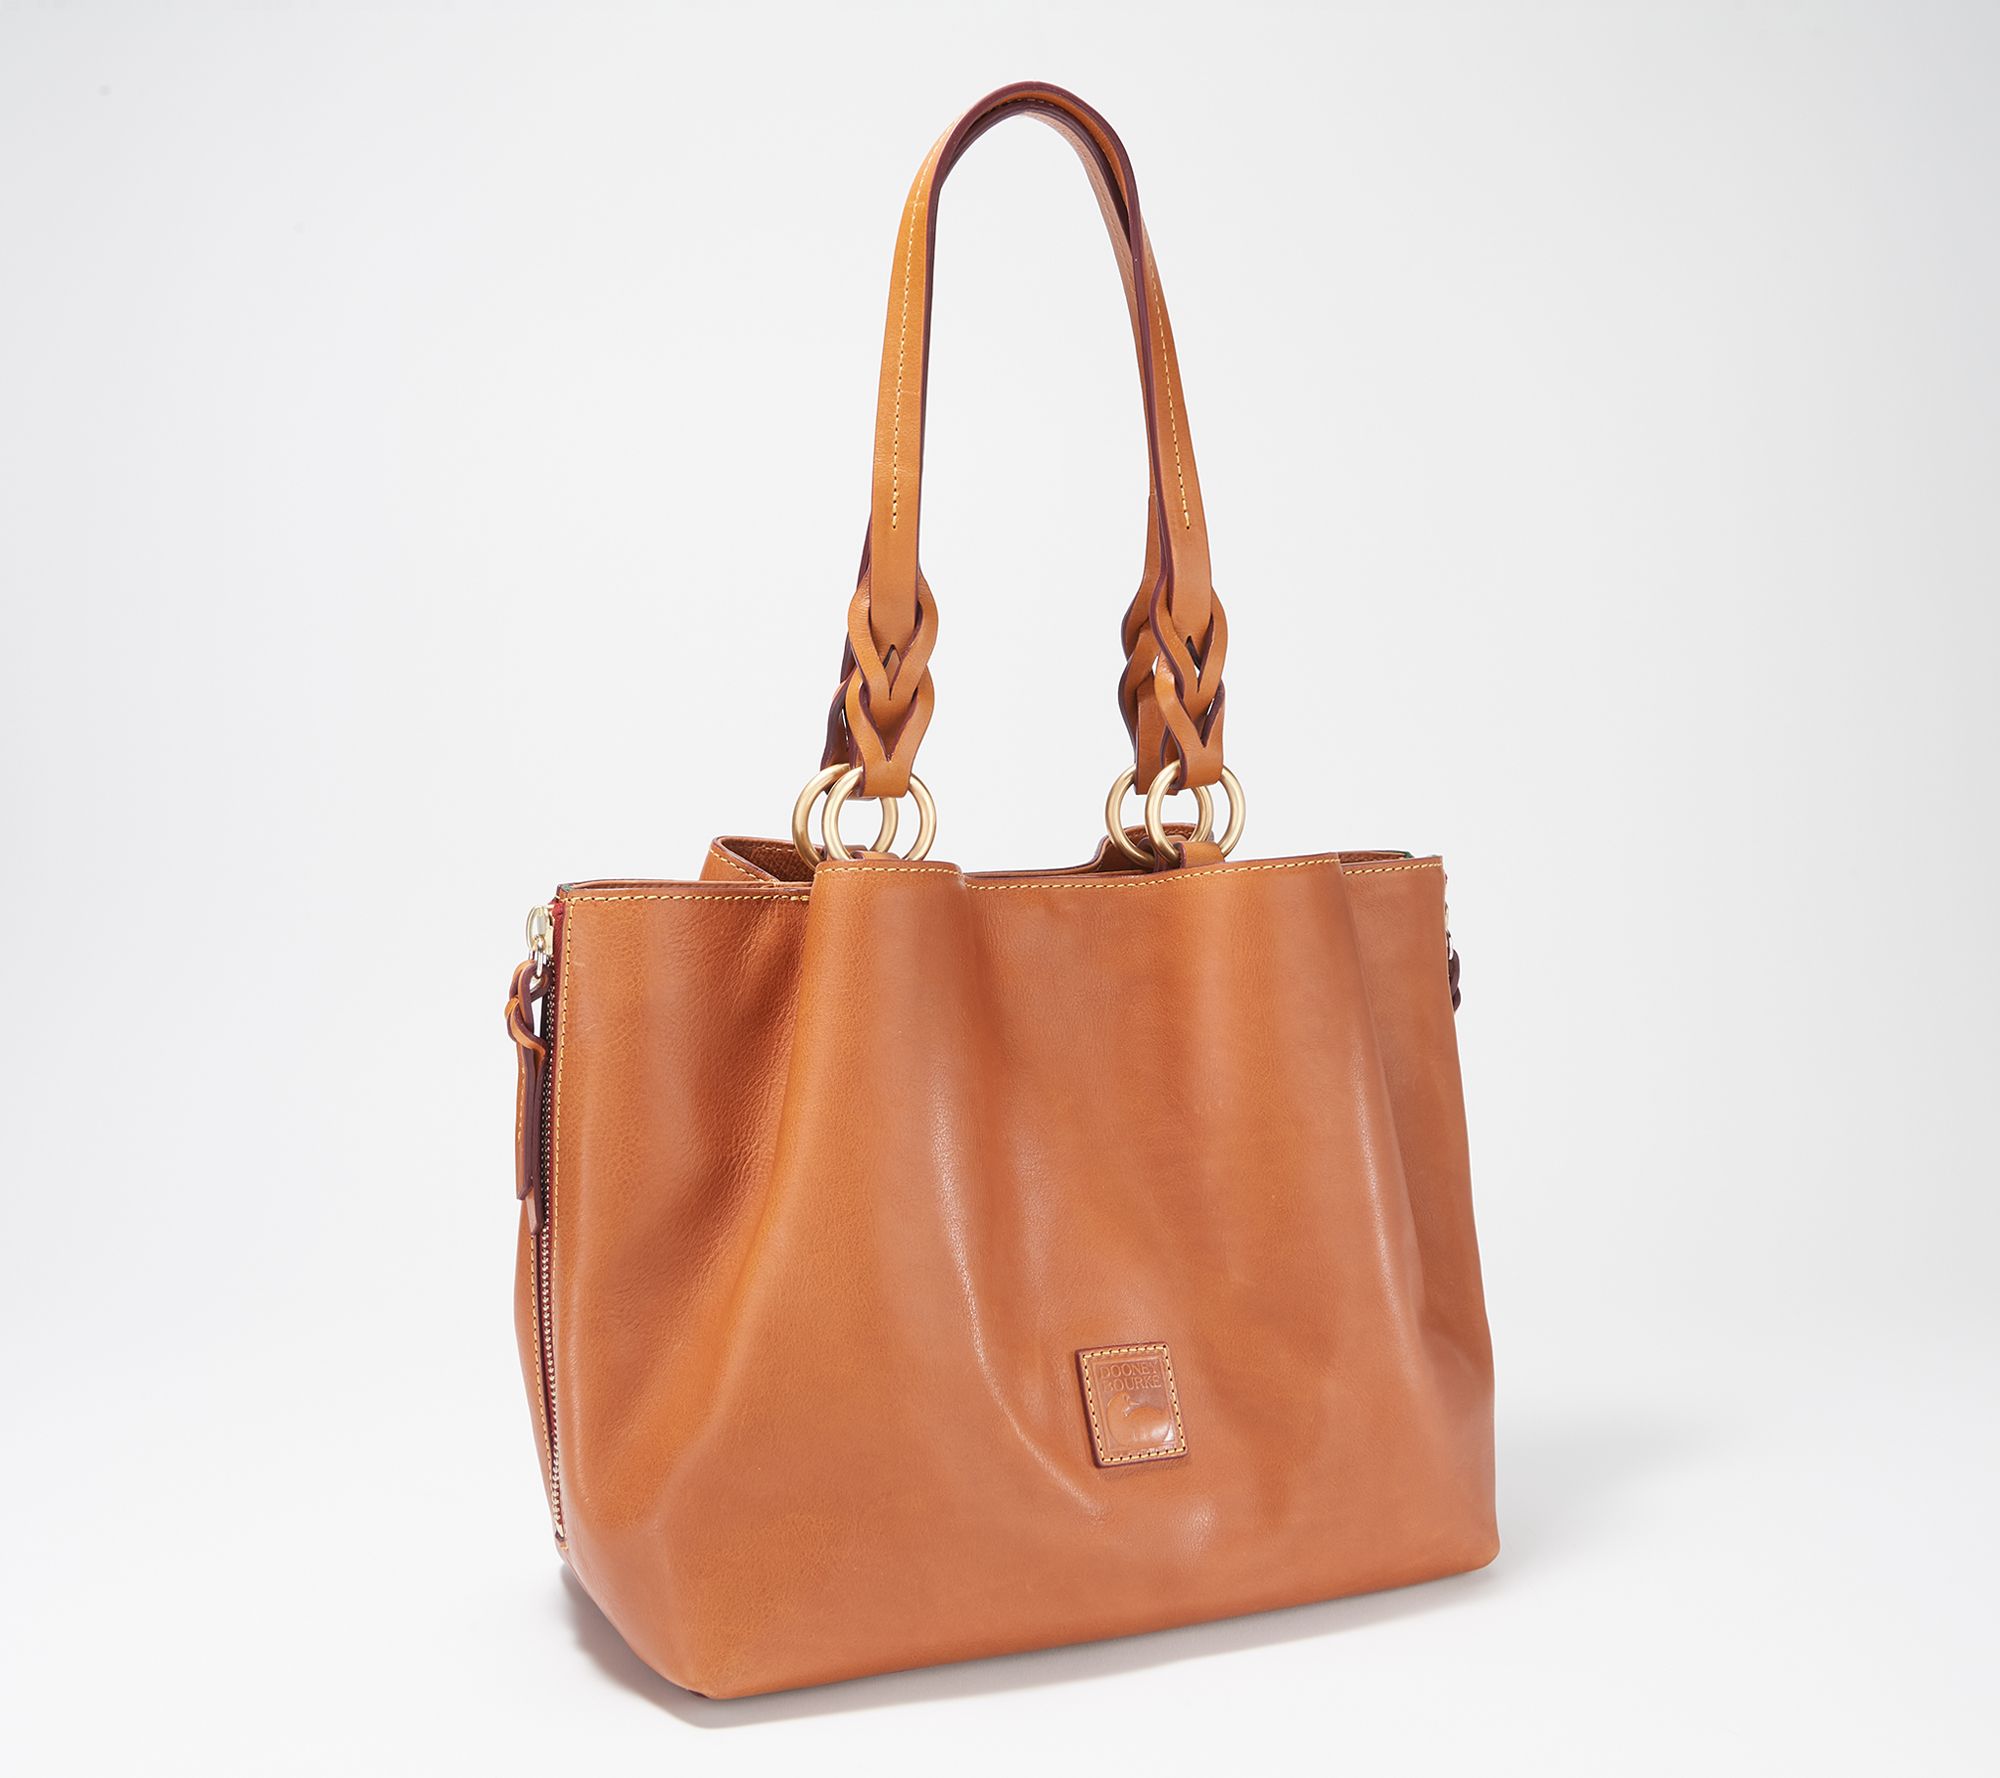 FWRD Renew Louis Vuitton Calfskin Capucines Handbag in Red